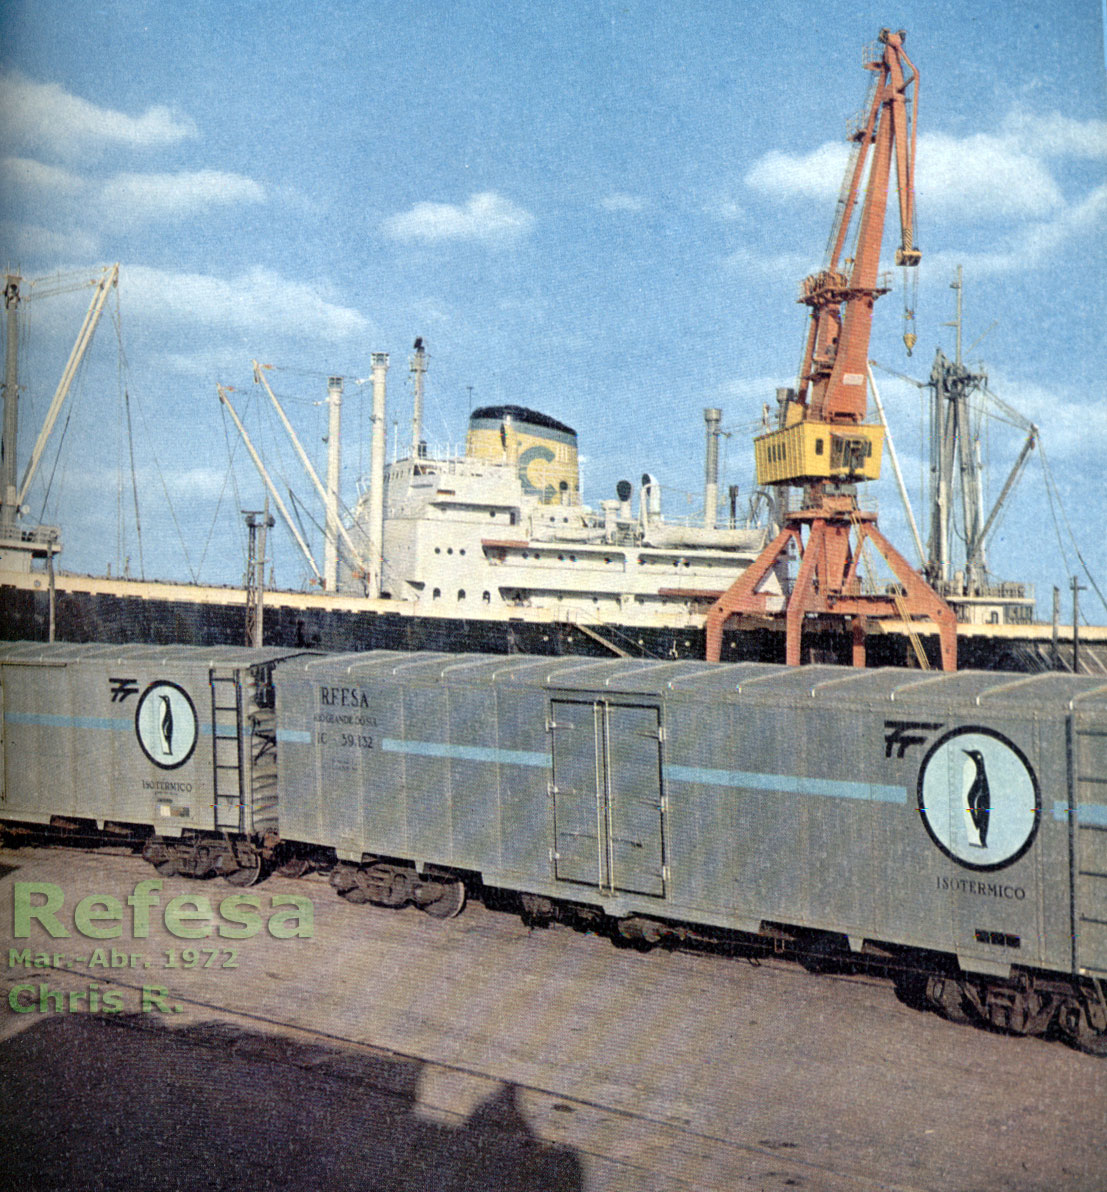 Vagões isotérmicos no porto de Rio Grande (RS), foto de capa da revista Refesa do início da década de 1970